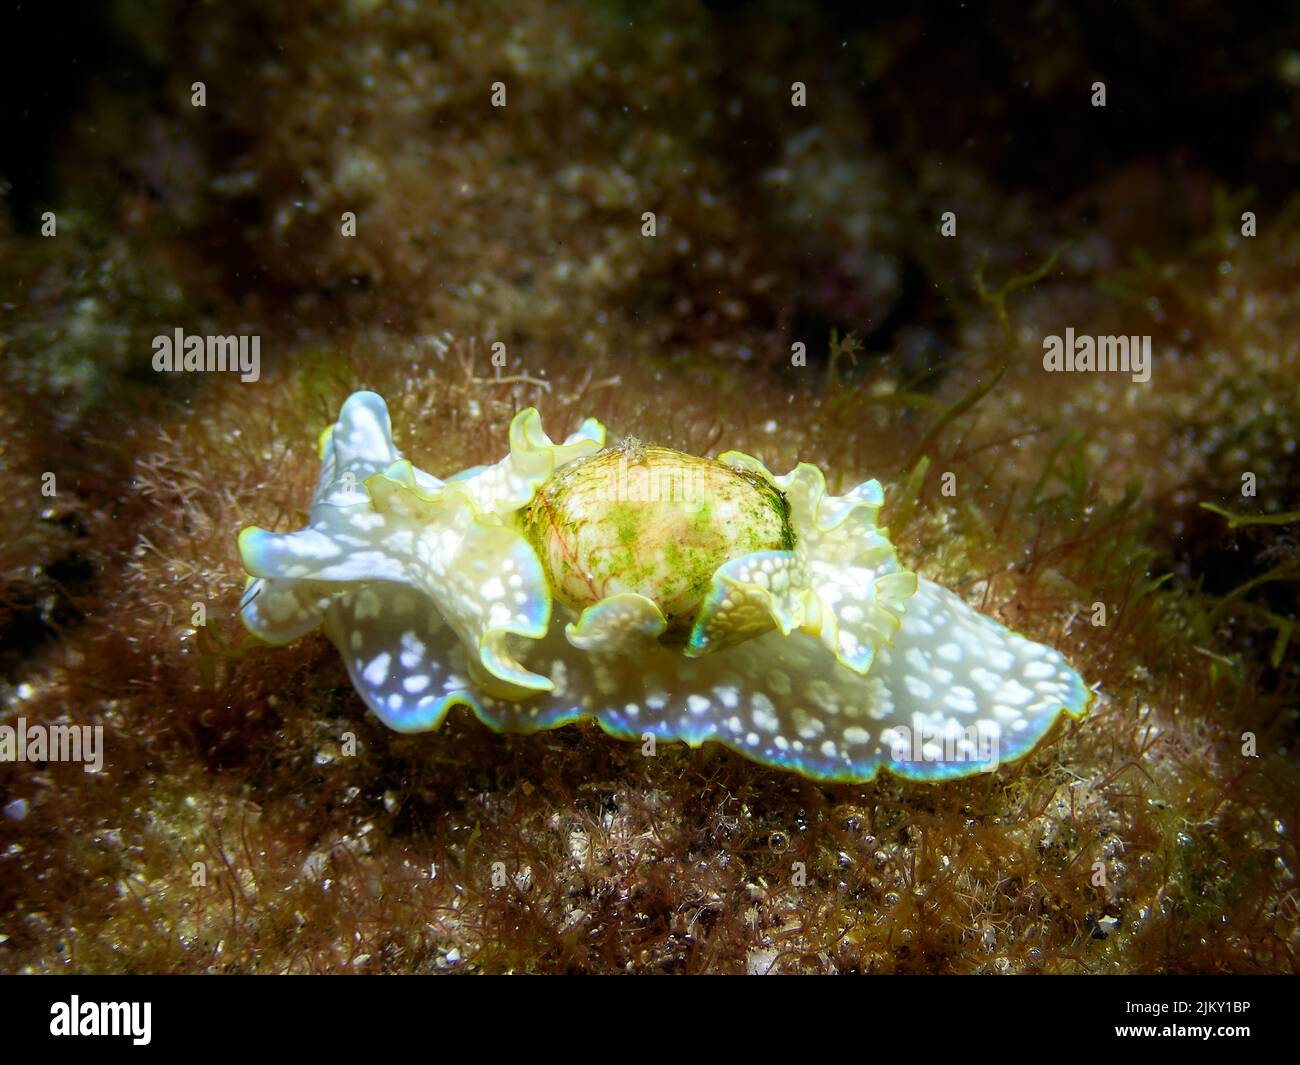 Gros plan d'un escargot de mer, Mini Melo (Micromelo undatus) rampant dans l'eau peu profonde. Faune marine à El Hierro, îles Canaries. Banque D'Images